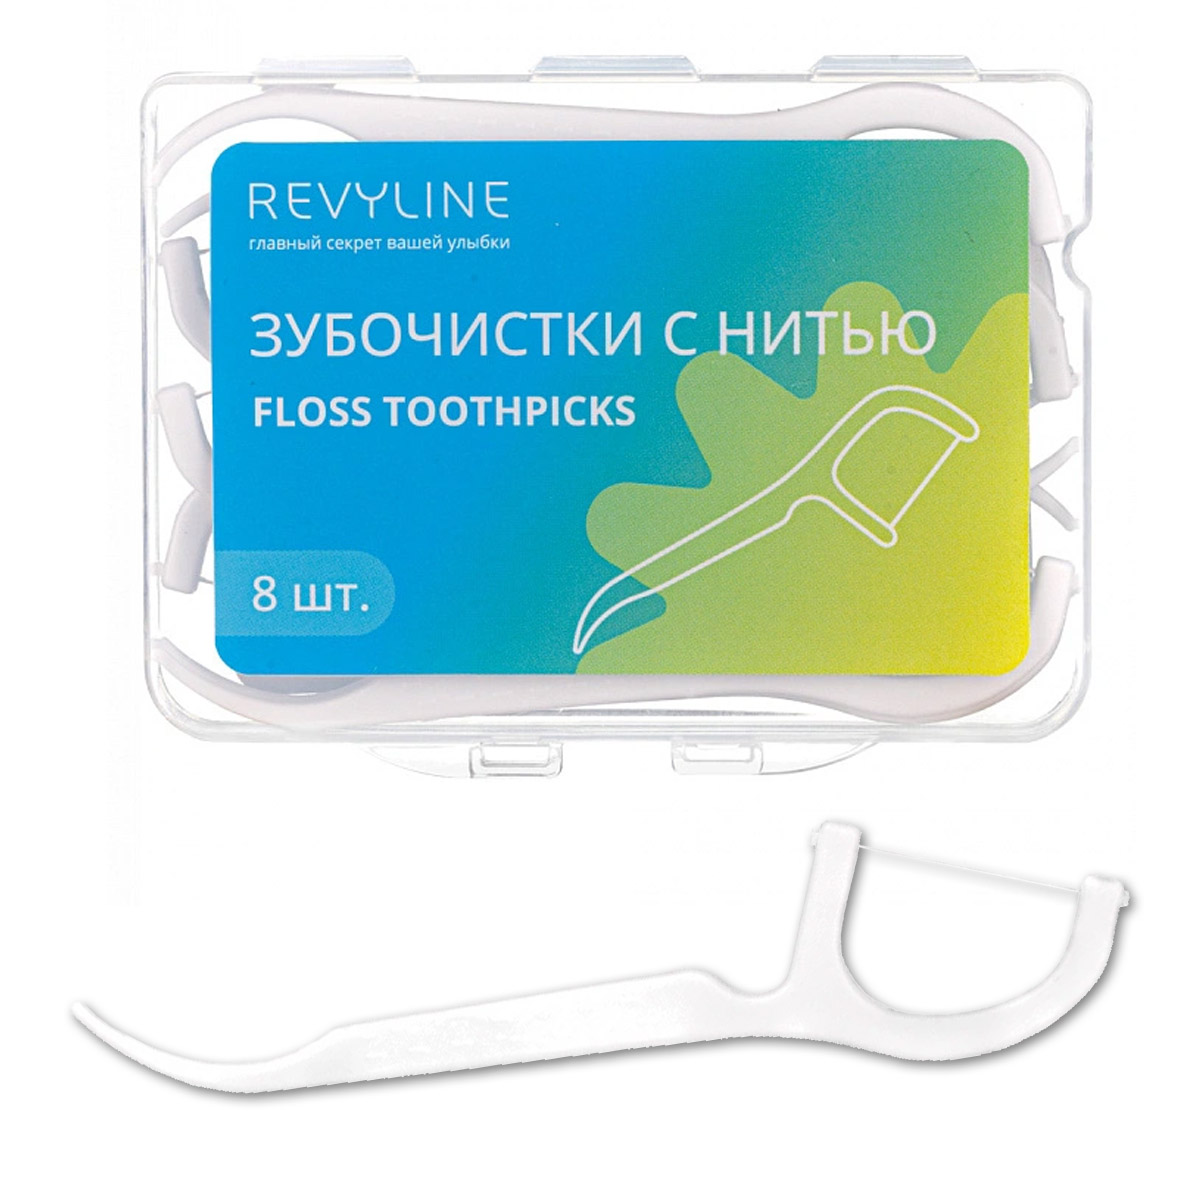 Зубная нить Revyline Revyline floss toothpicks, 8 шт.